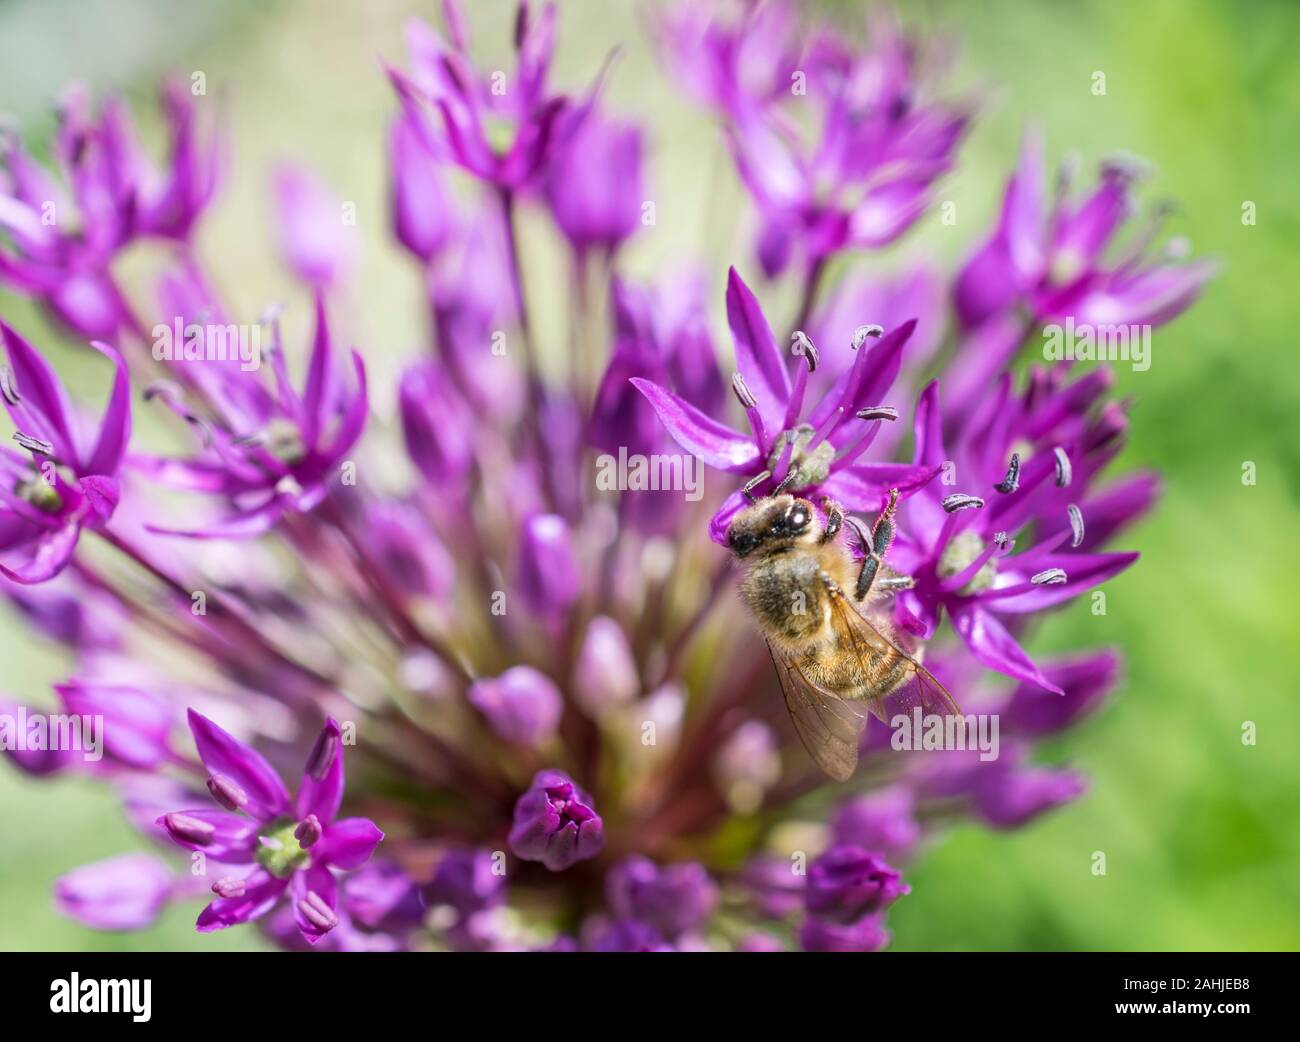 allium flowers with bee Stock Photo